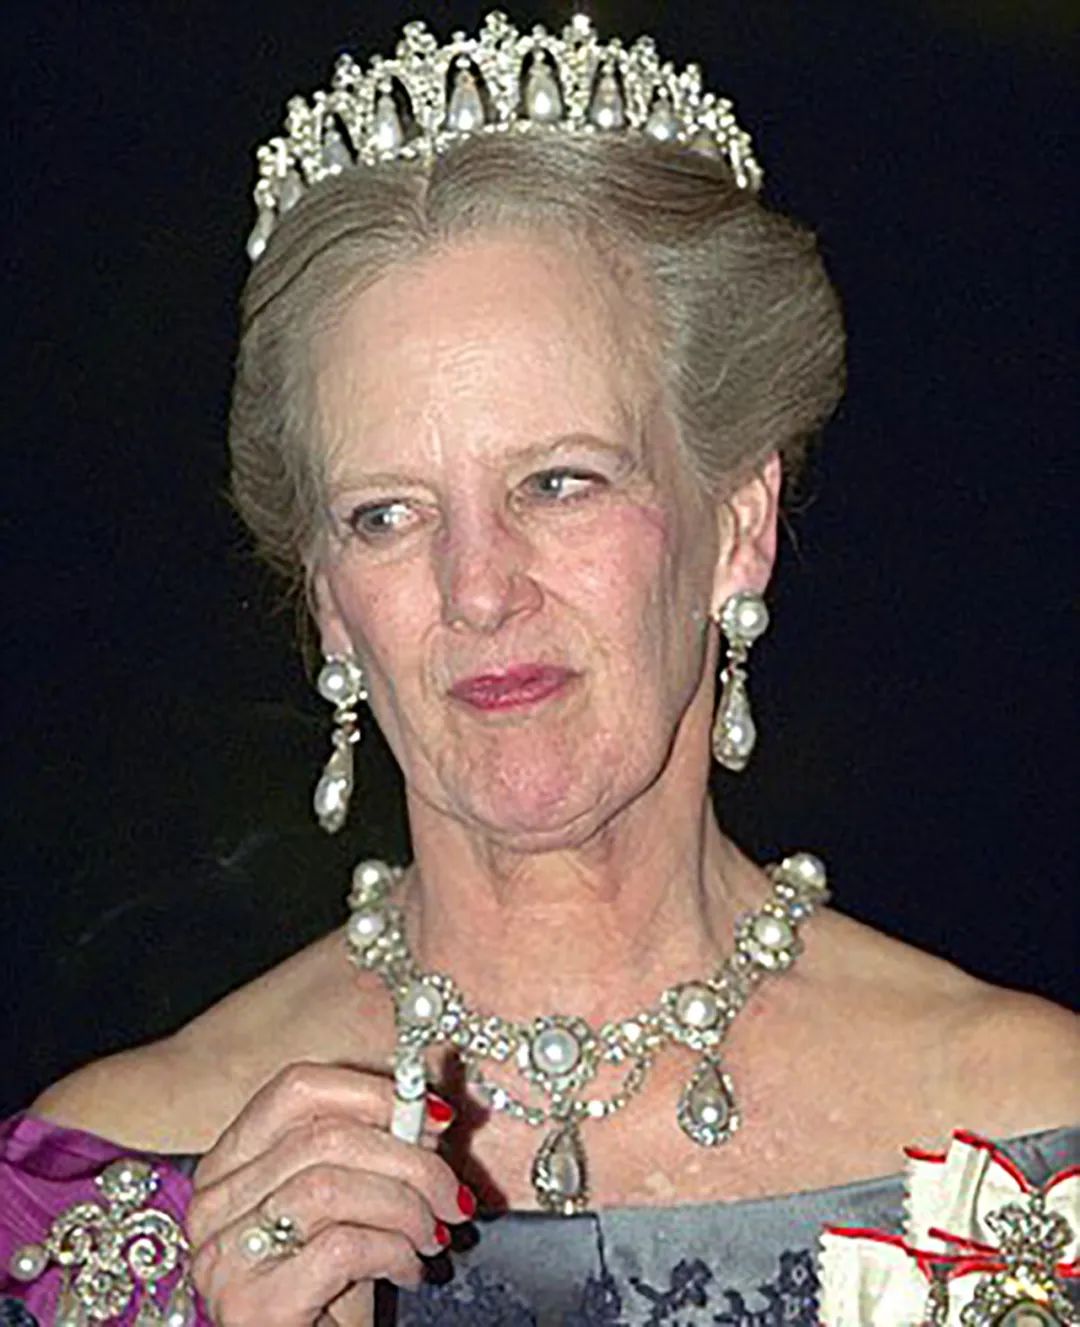 丹麦女王抽烟图片